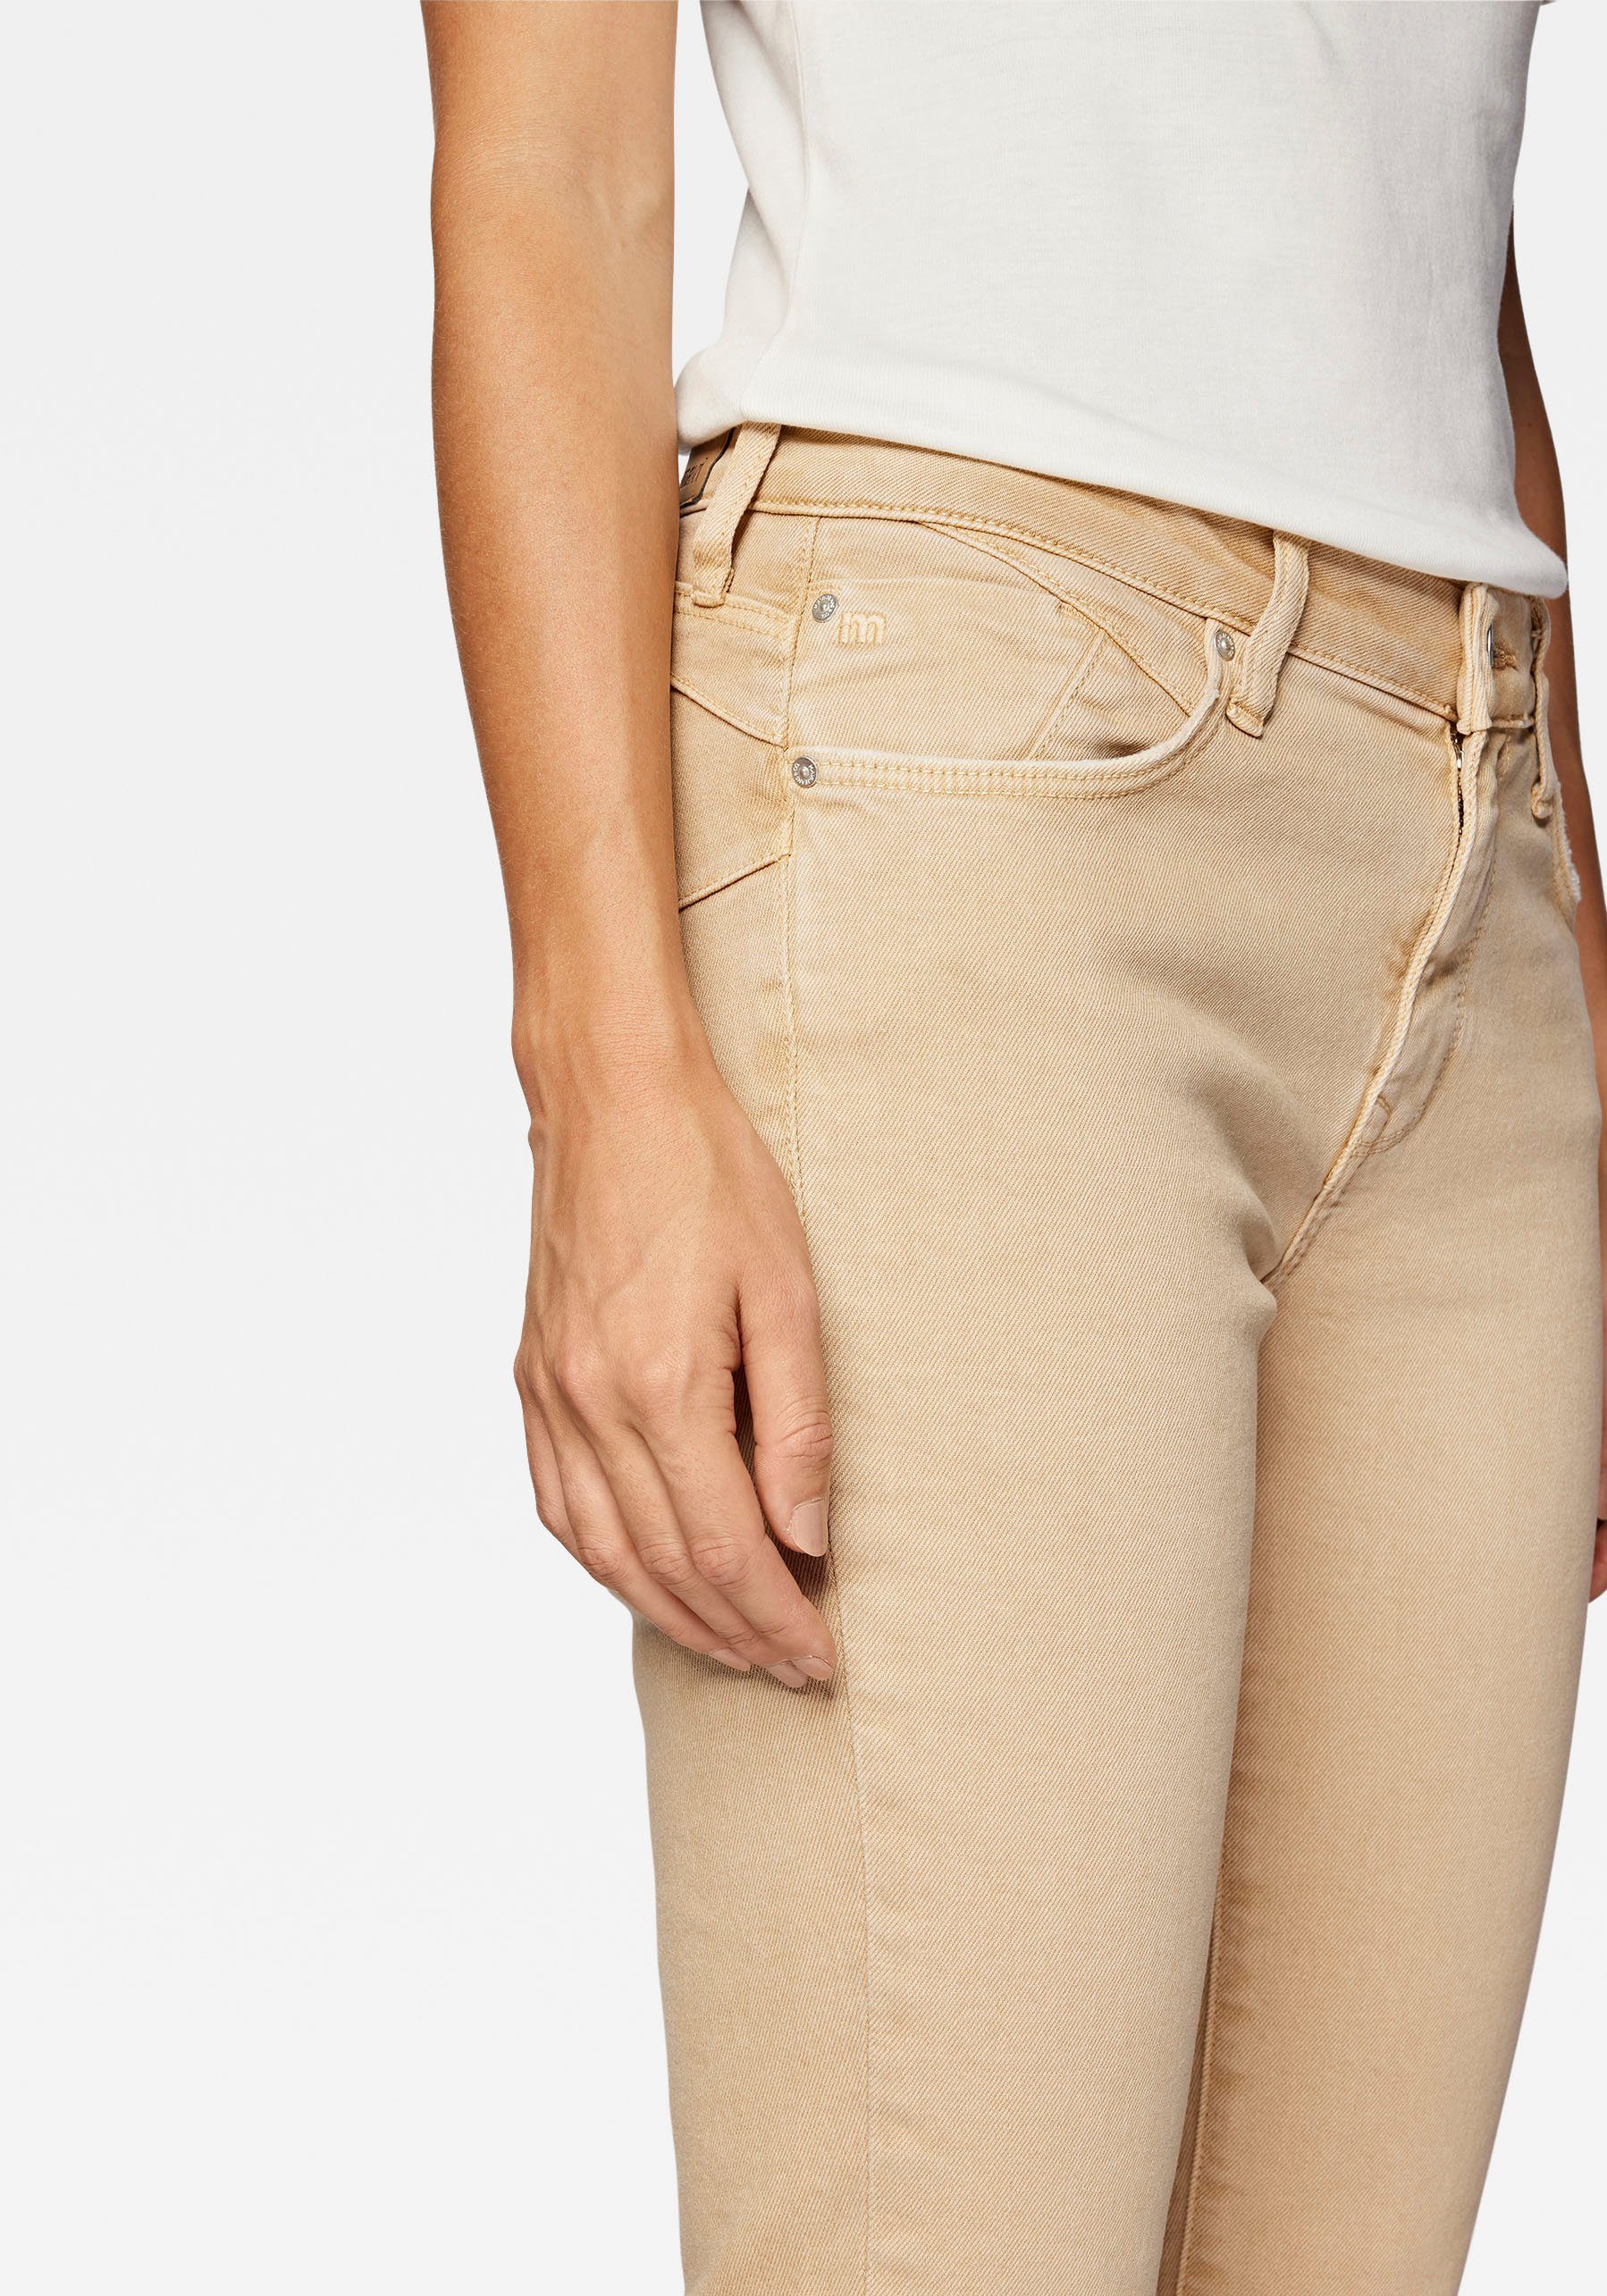 Verarbeitung dank Stretchdenim hochwertiger trageangenehmer camel Slim-fit-Jeans (beige) Mavi